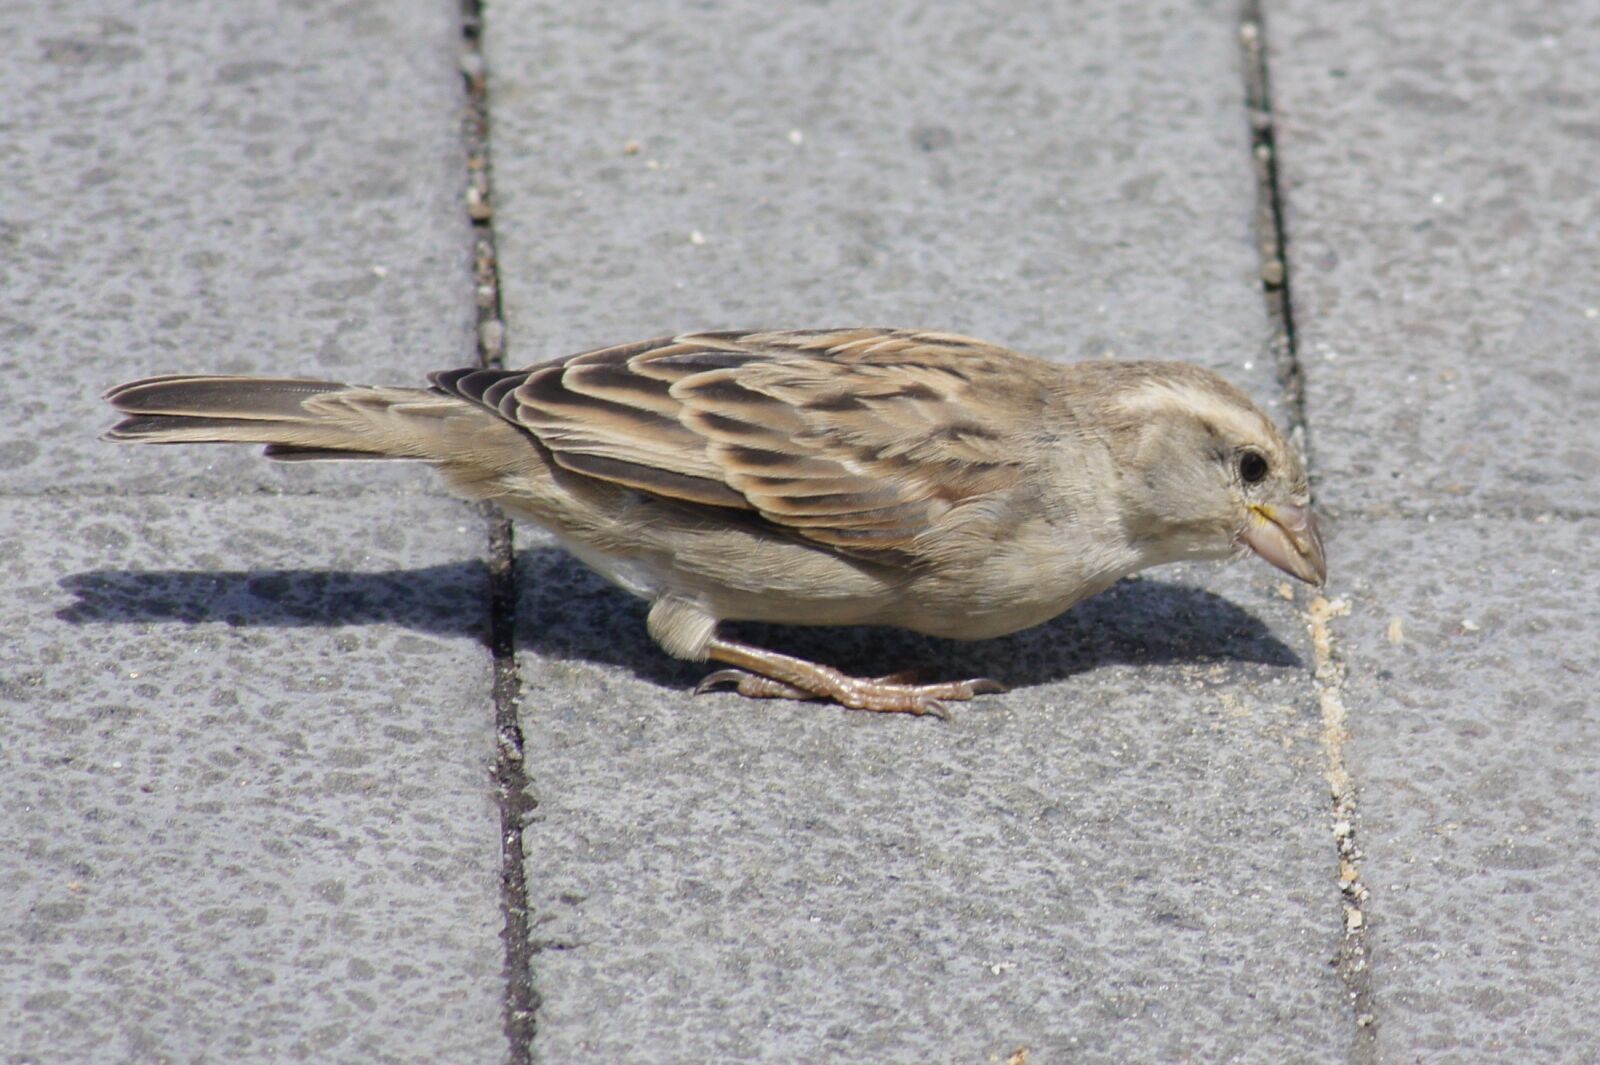 Sony Alpha DSLR-A450 sample photo. Bird, sparrow, macro photography